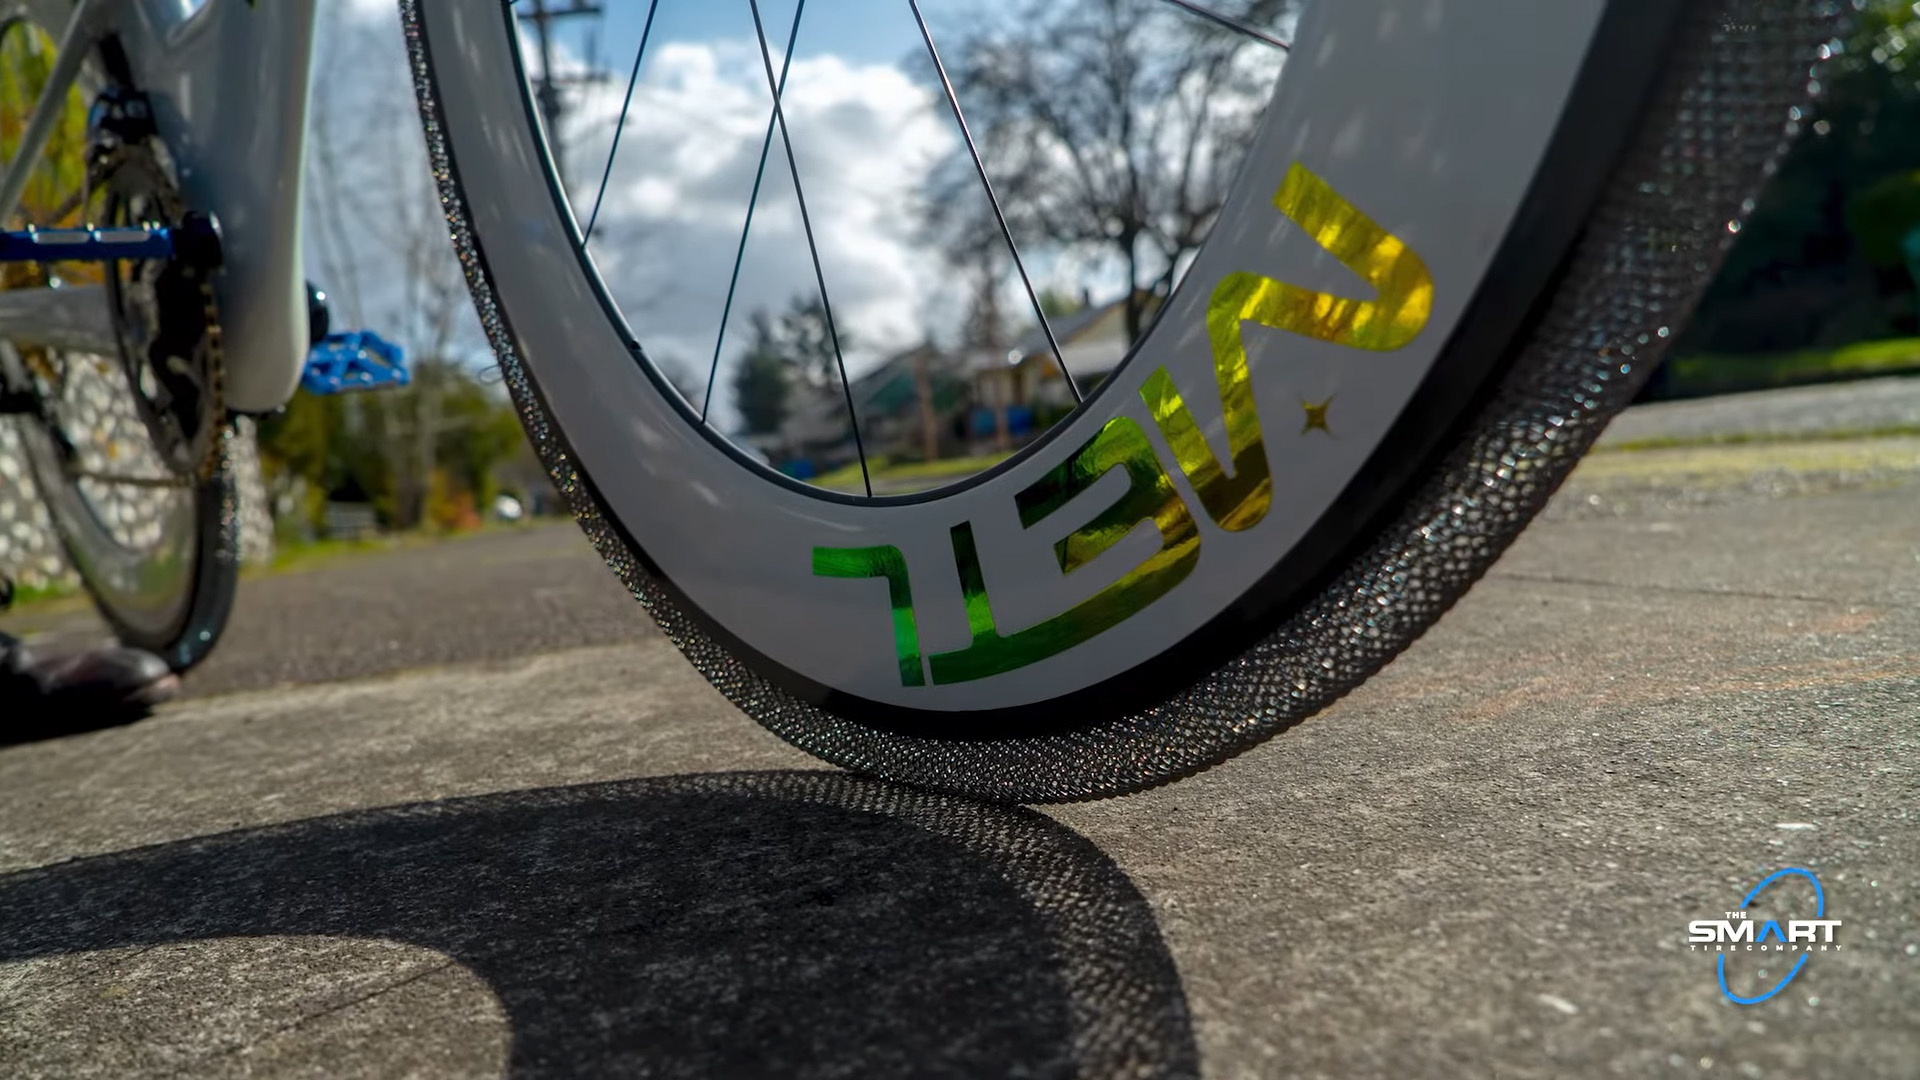 Novos pneus de bicicleta revolucionários inspirados na NASA não precisam ser enchidos com ar